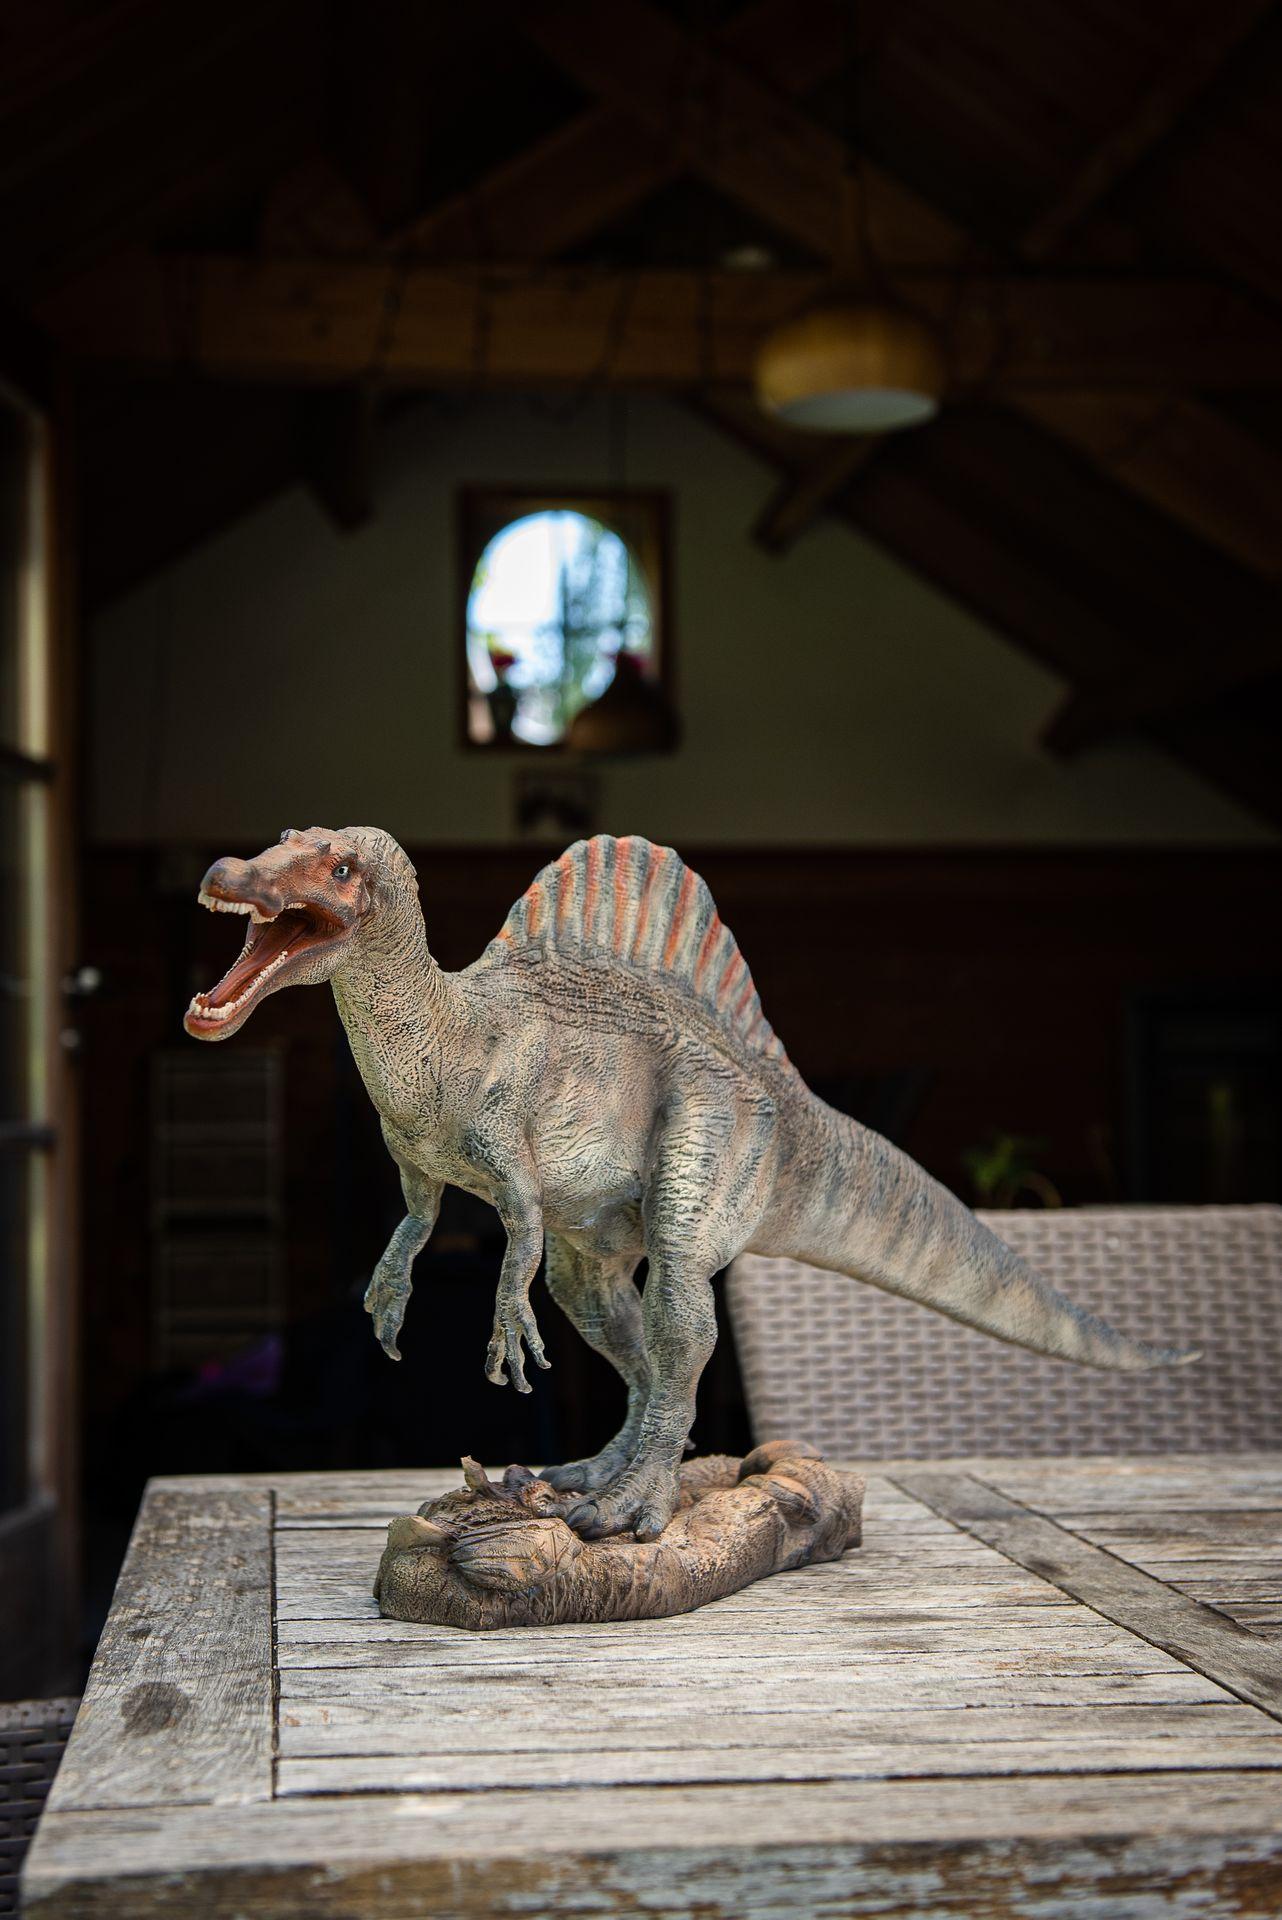 Garden ID spinosaurus statue on a wooden table